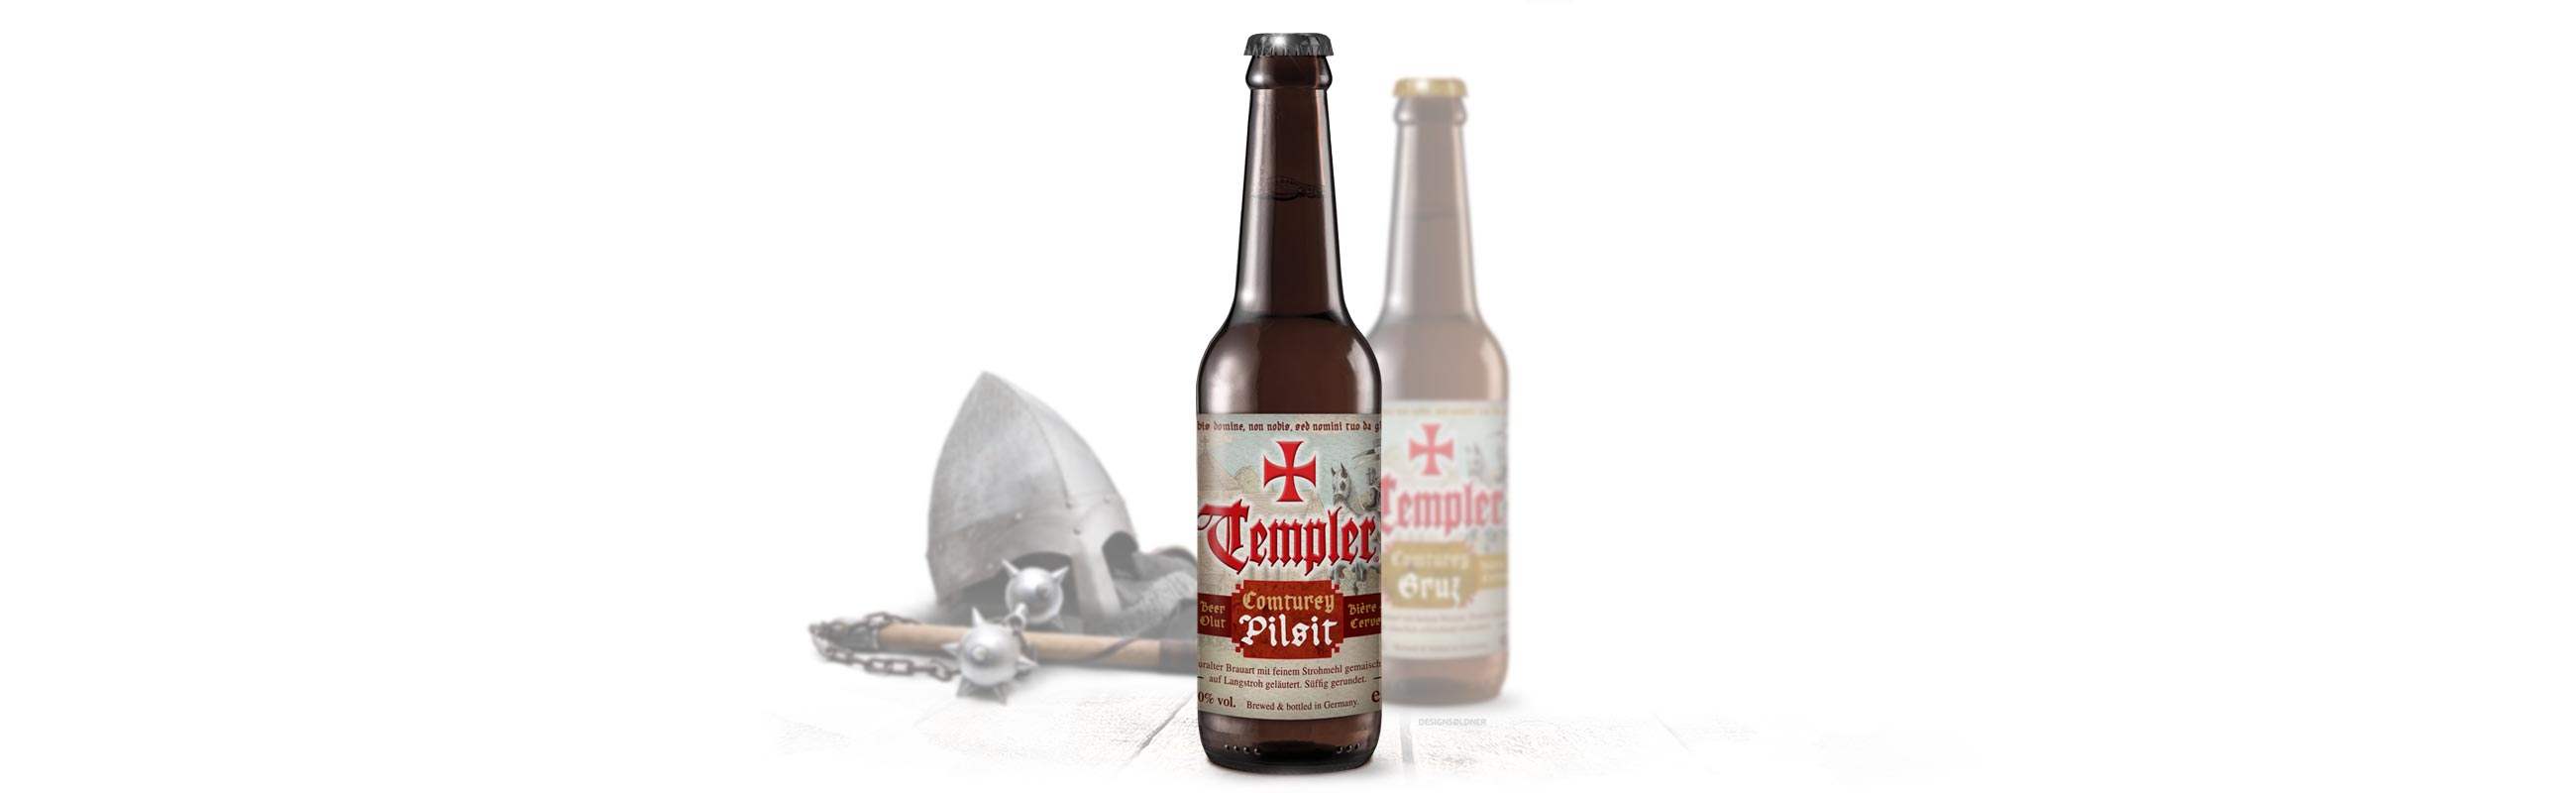 Templer Conturey Bier Pilsit und Gruz